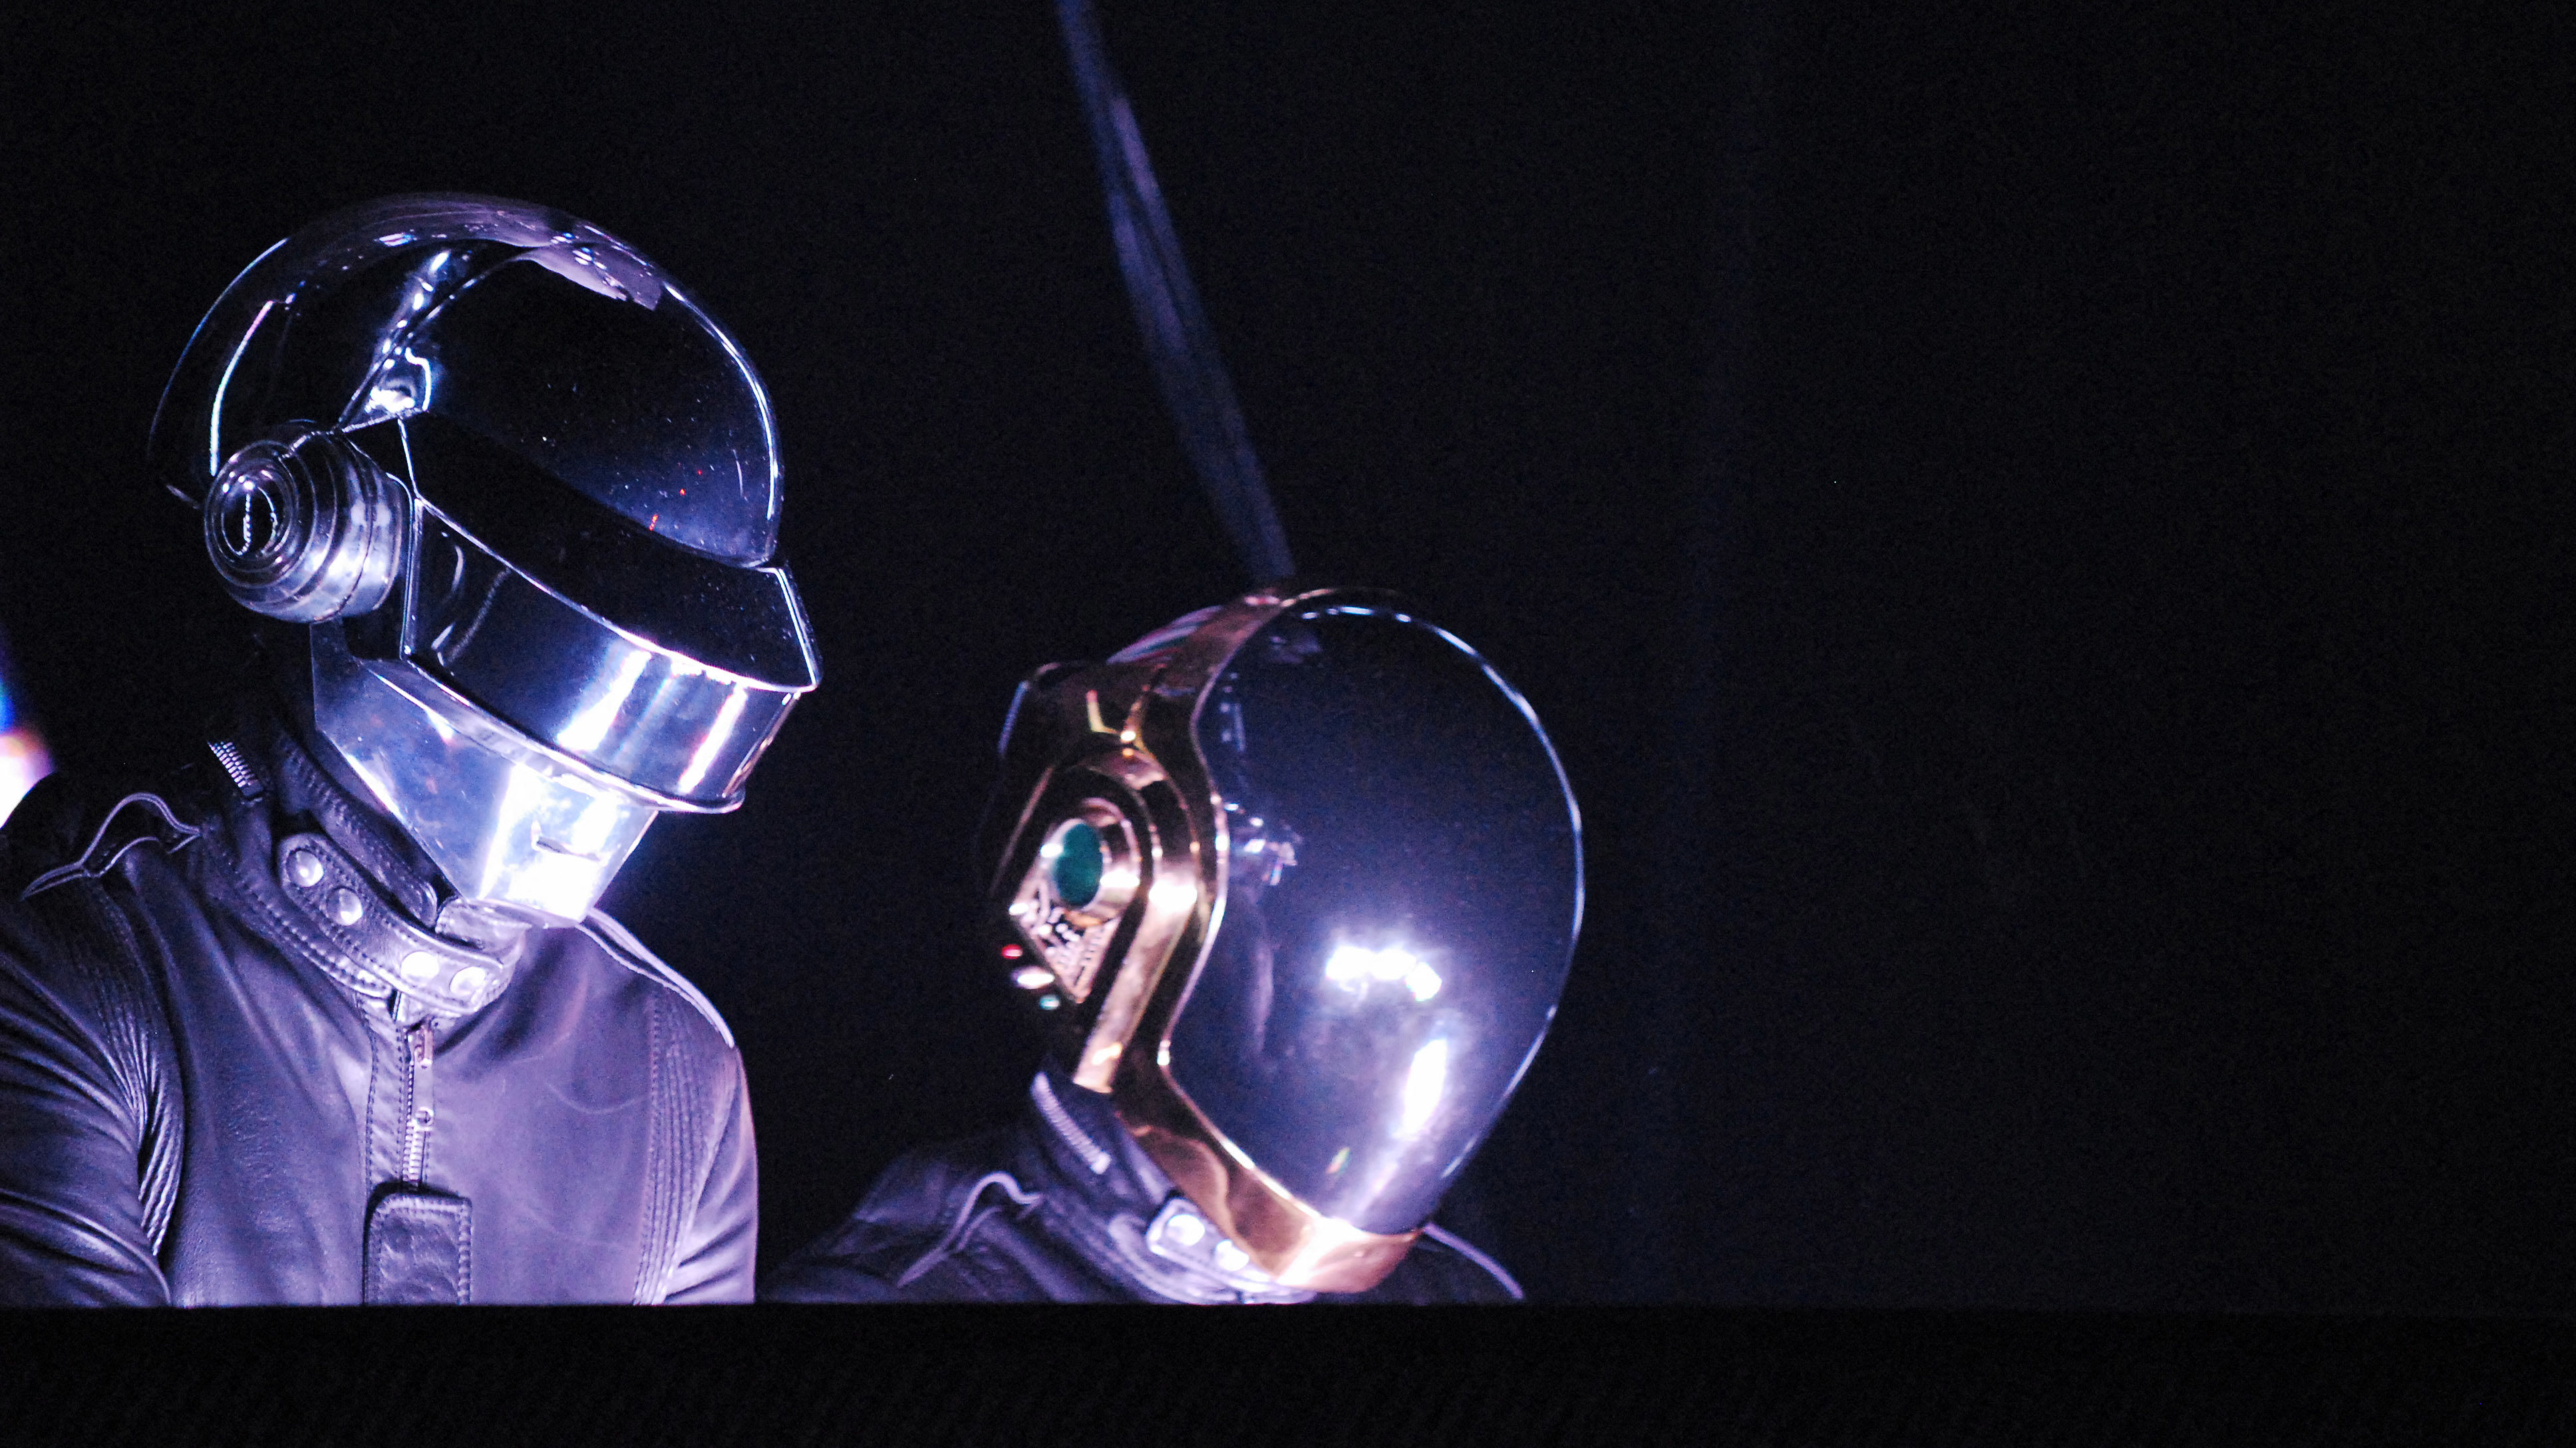 Daft Punkot hallgat a világ a feloszlás bejelentése óta